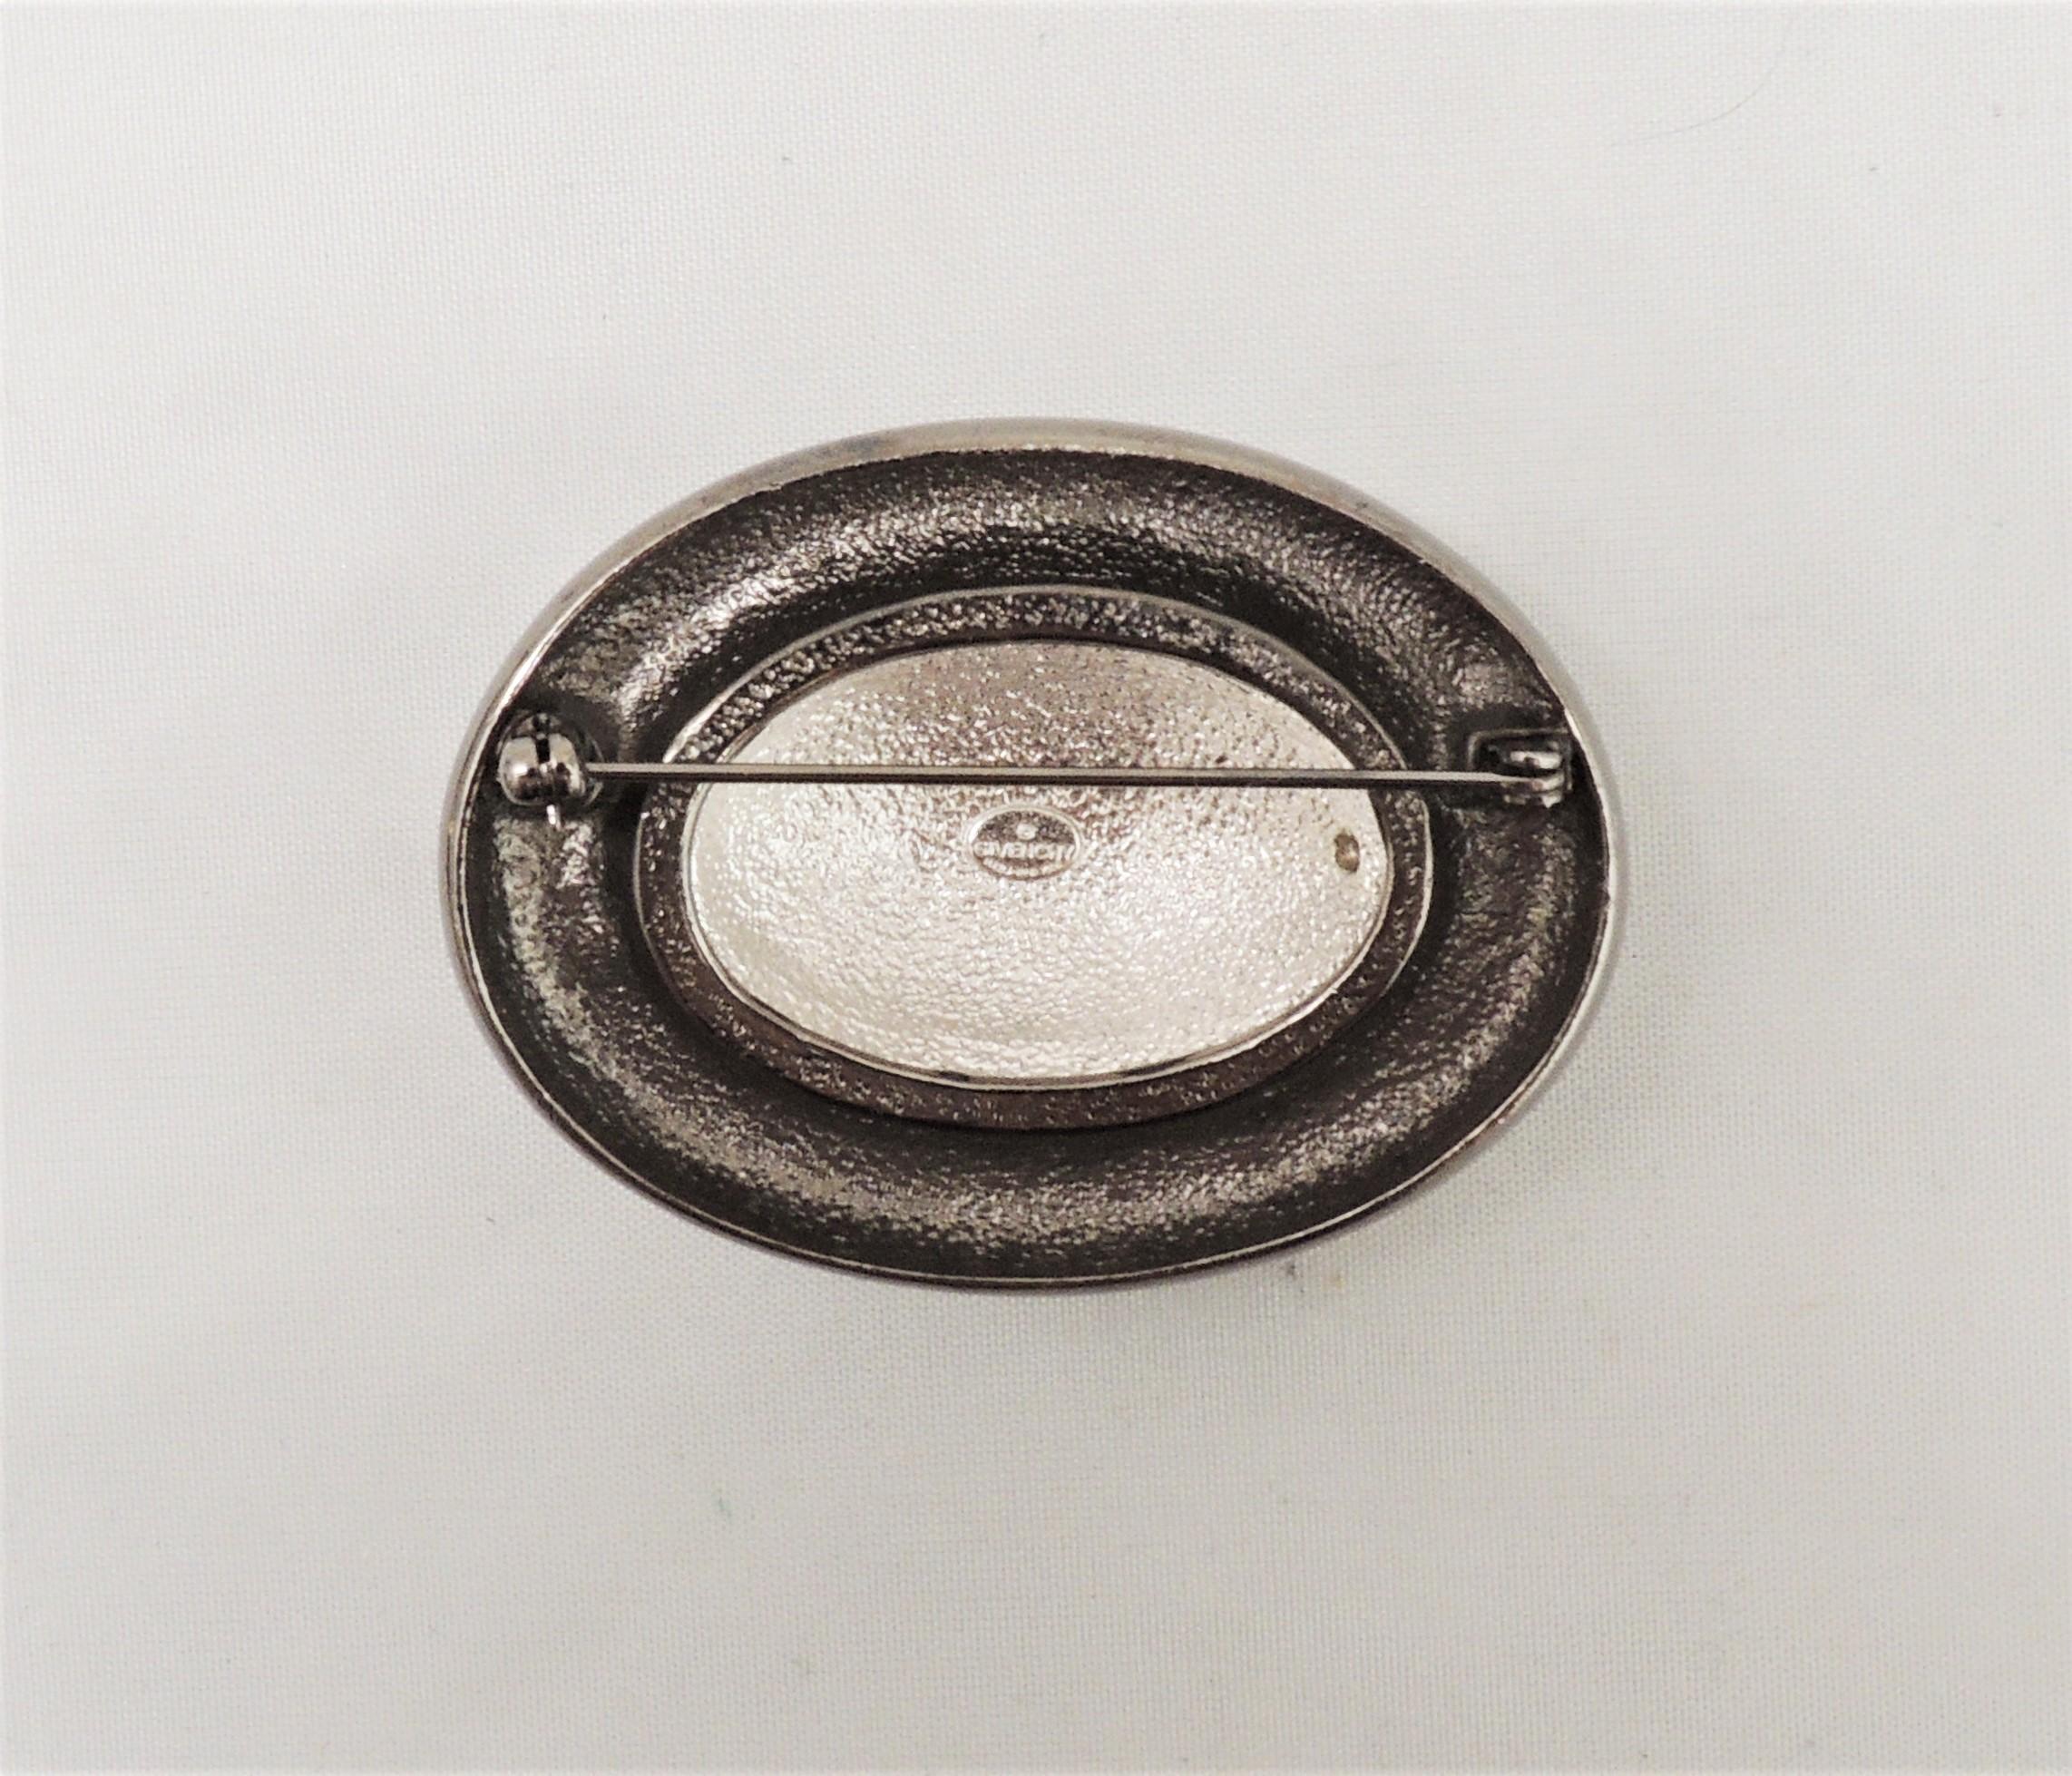 Broche des années 1980 en hématite ovale pavée de strass clairs avec fermoir de sécurité. Marqué 